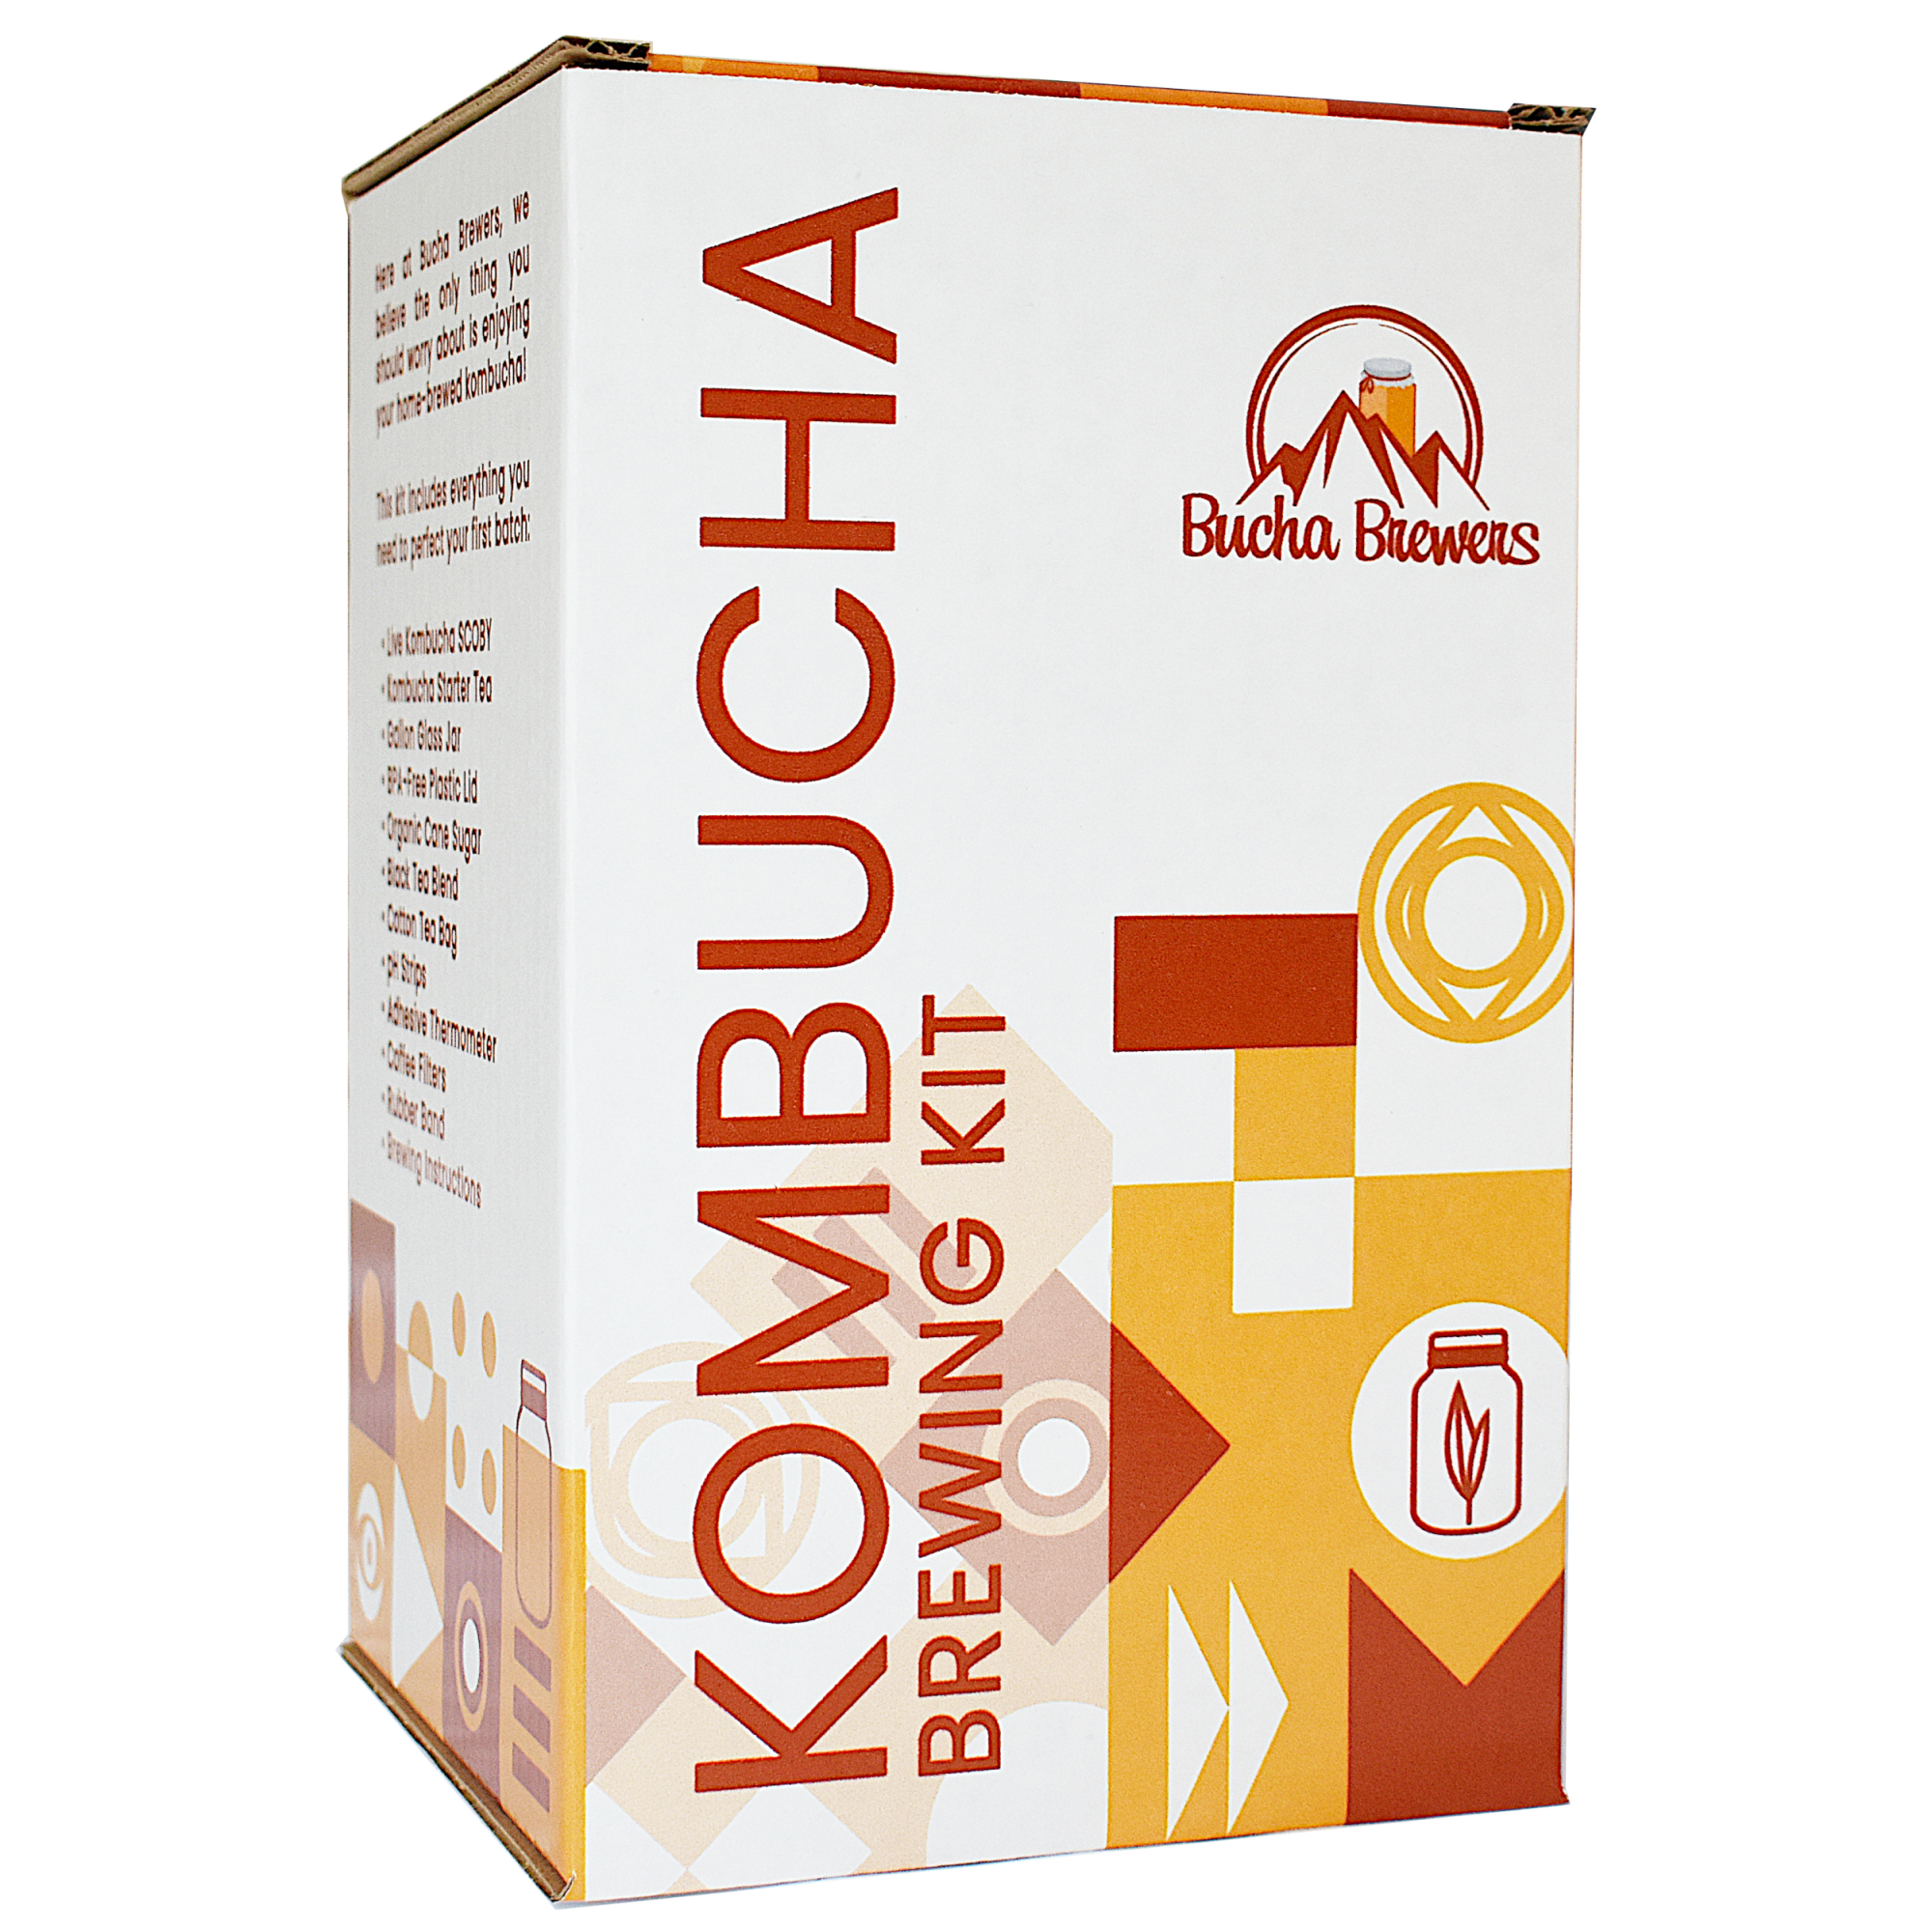 Brewer's Best Kombucha Equipment Kit